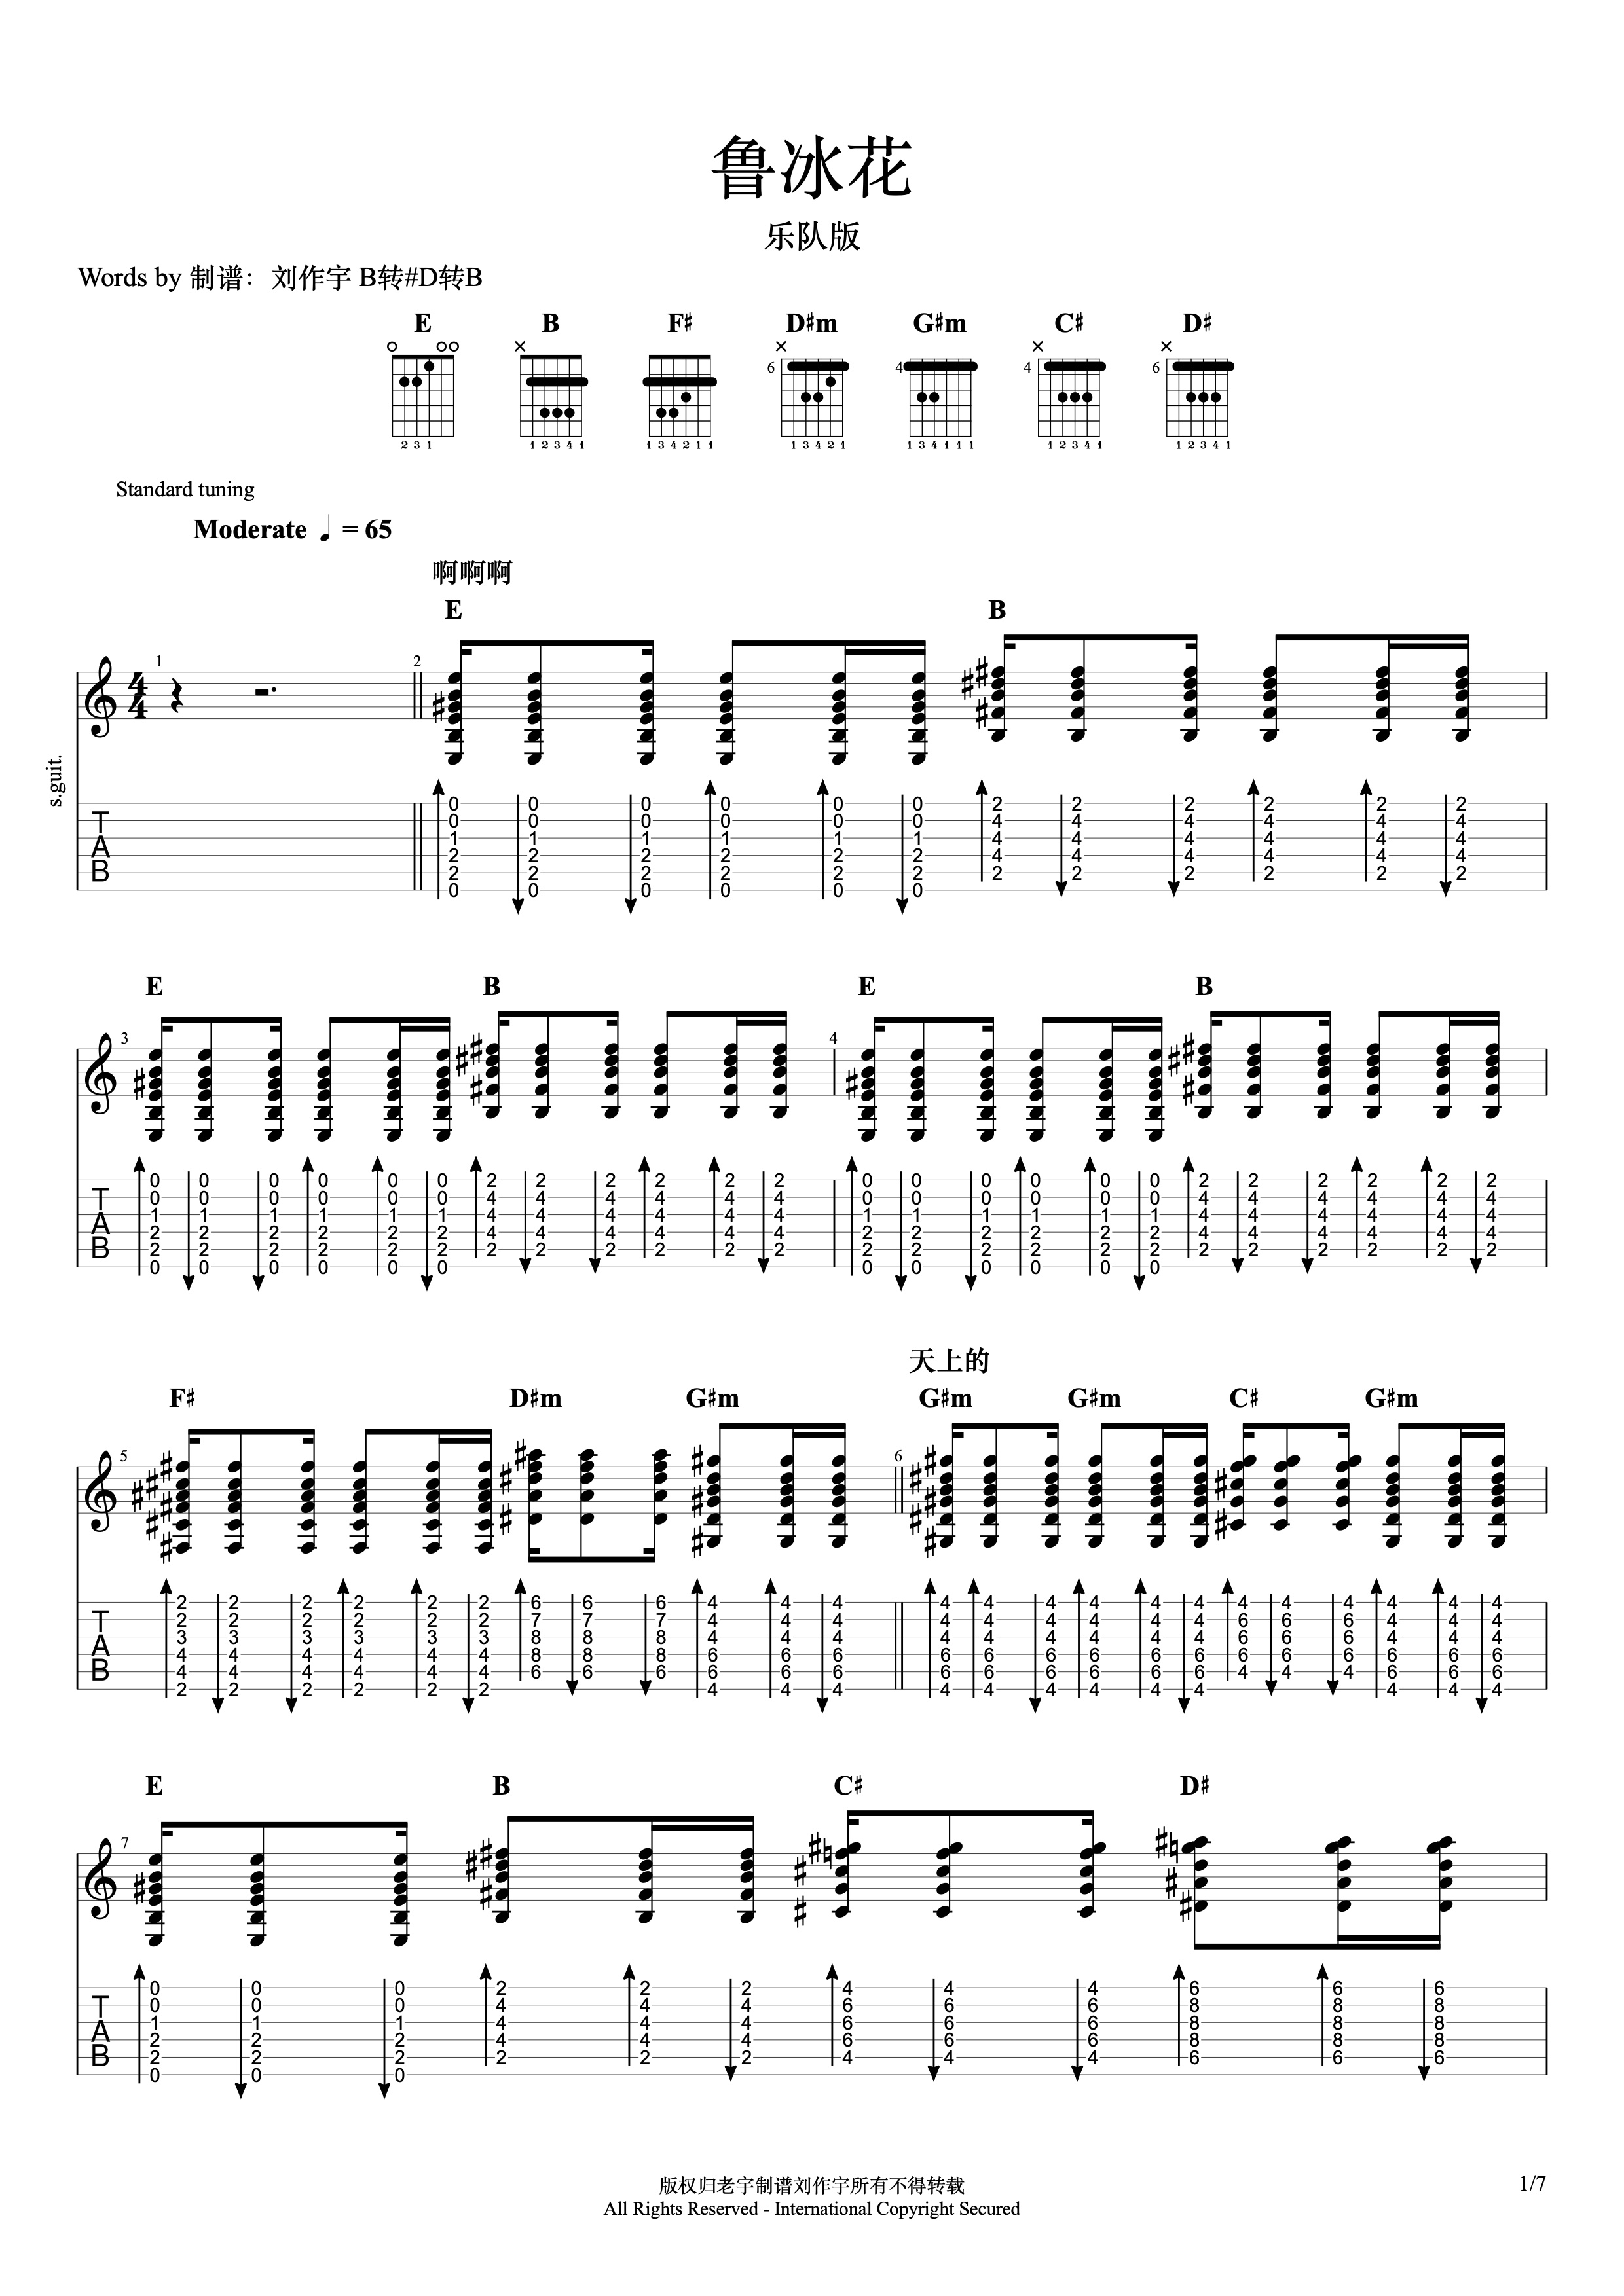 鲁冰花-完整版双手简谱预览4-钢琴谱文件（五线谱、双手简谱、数字谱、Midi、PDF）免费下载